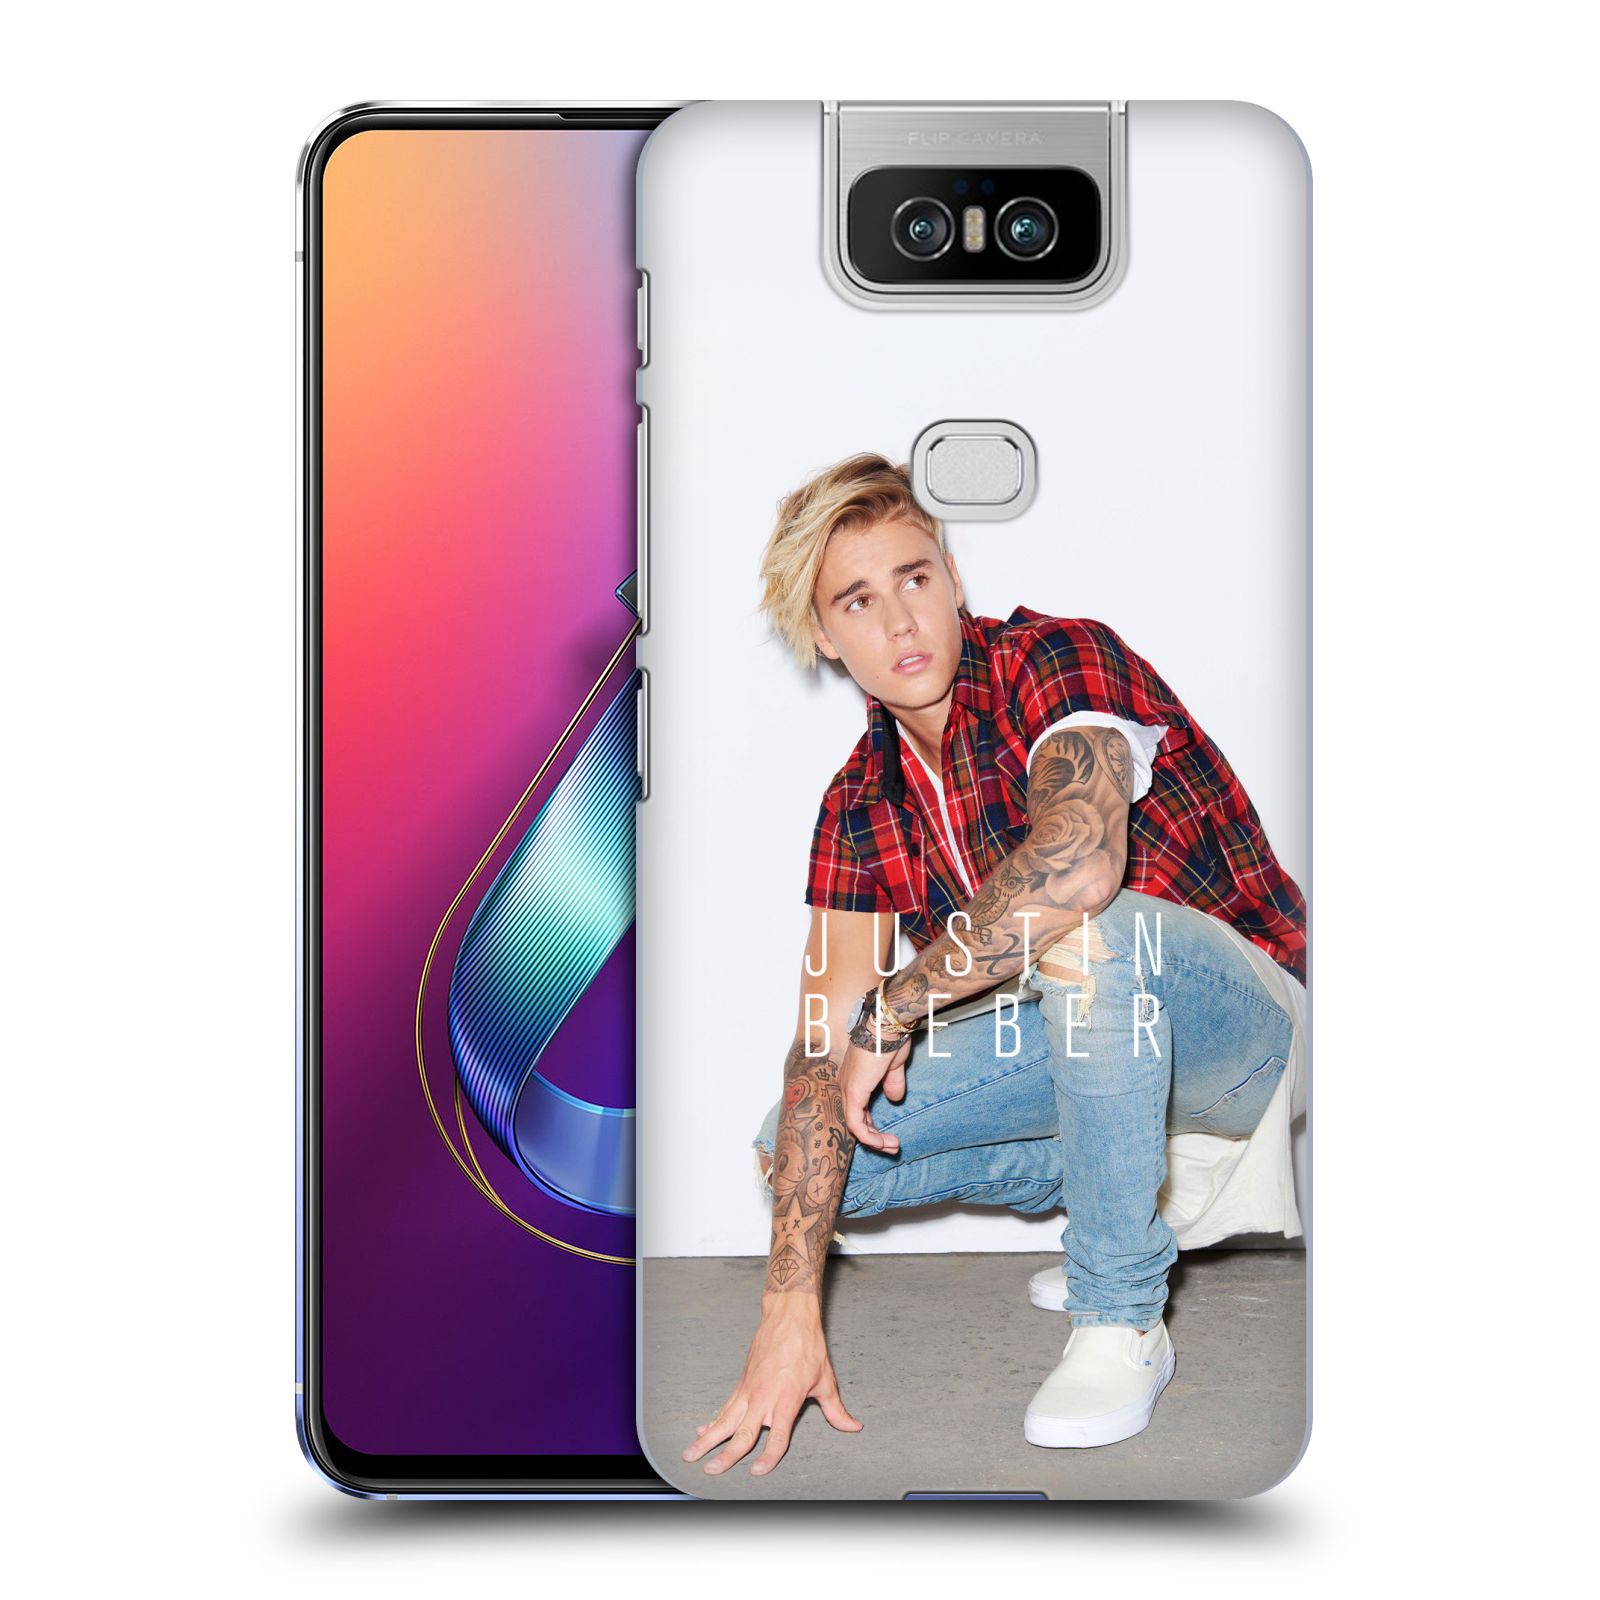 Pouzdro na mobil Asus Zenfone 6 ZS630KL - HEAD CASE - Justin Bieber foto Purpose tour kalendář